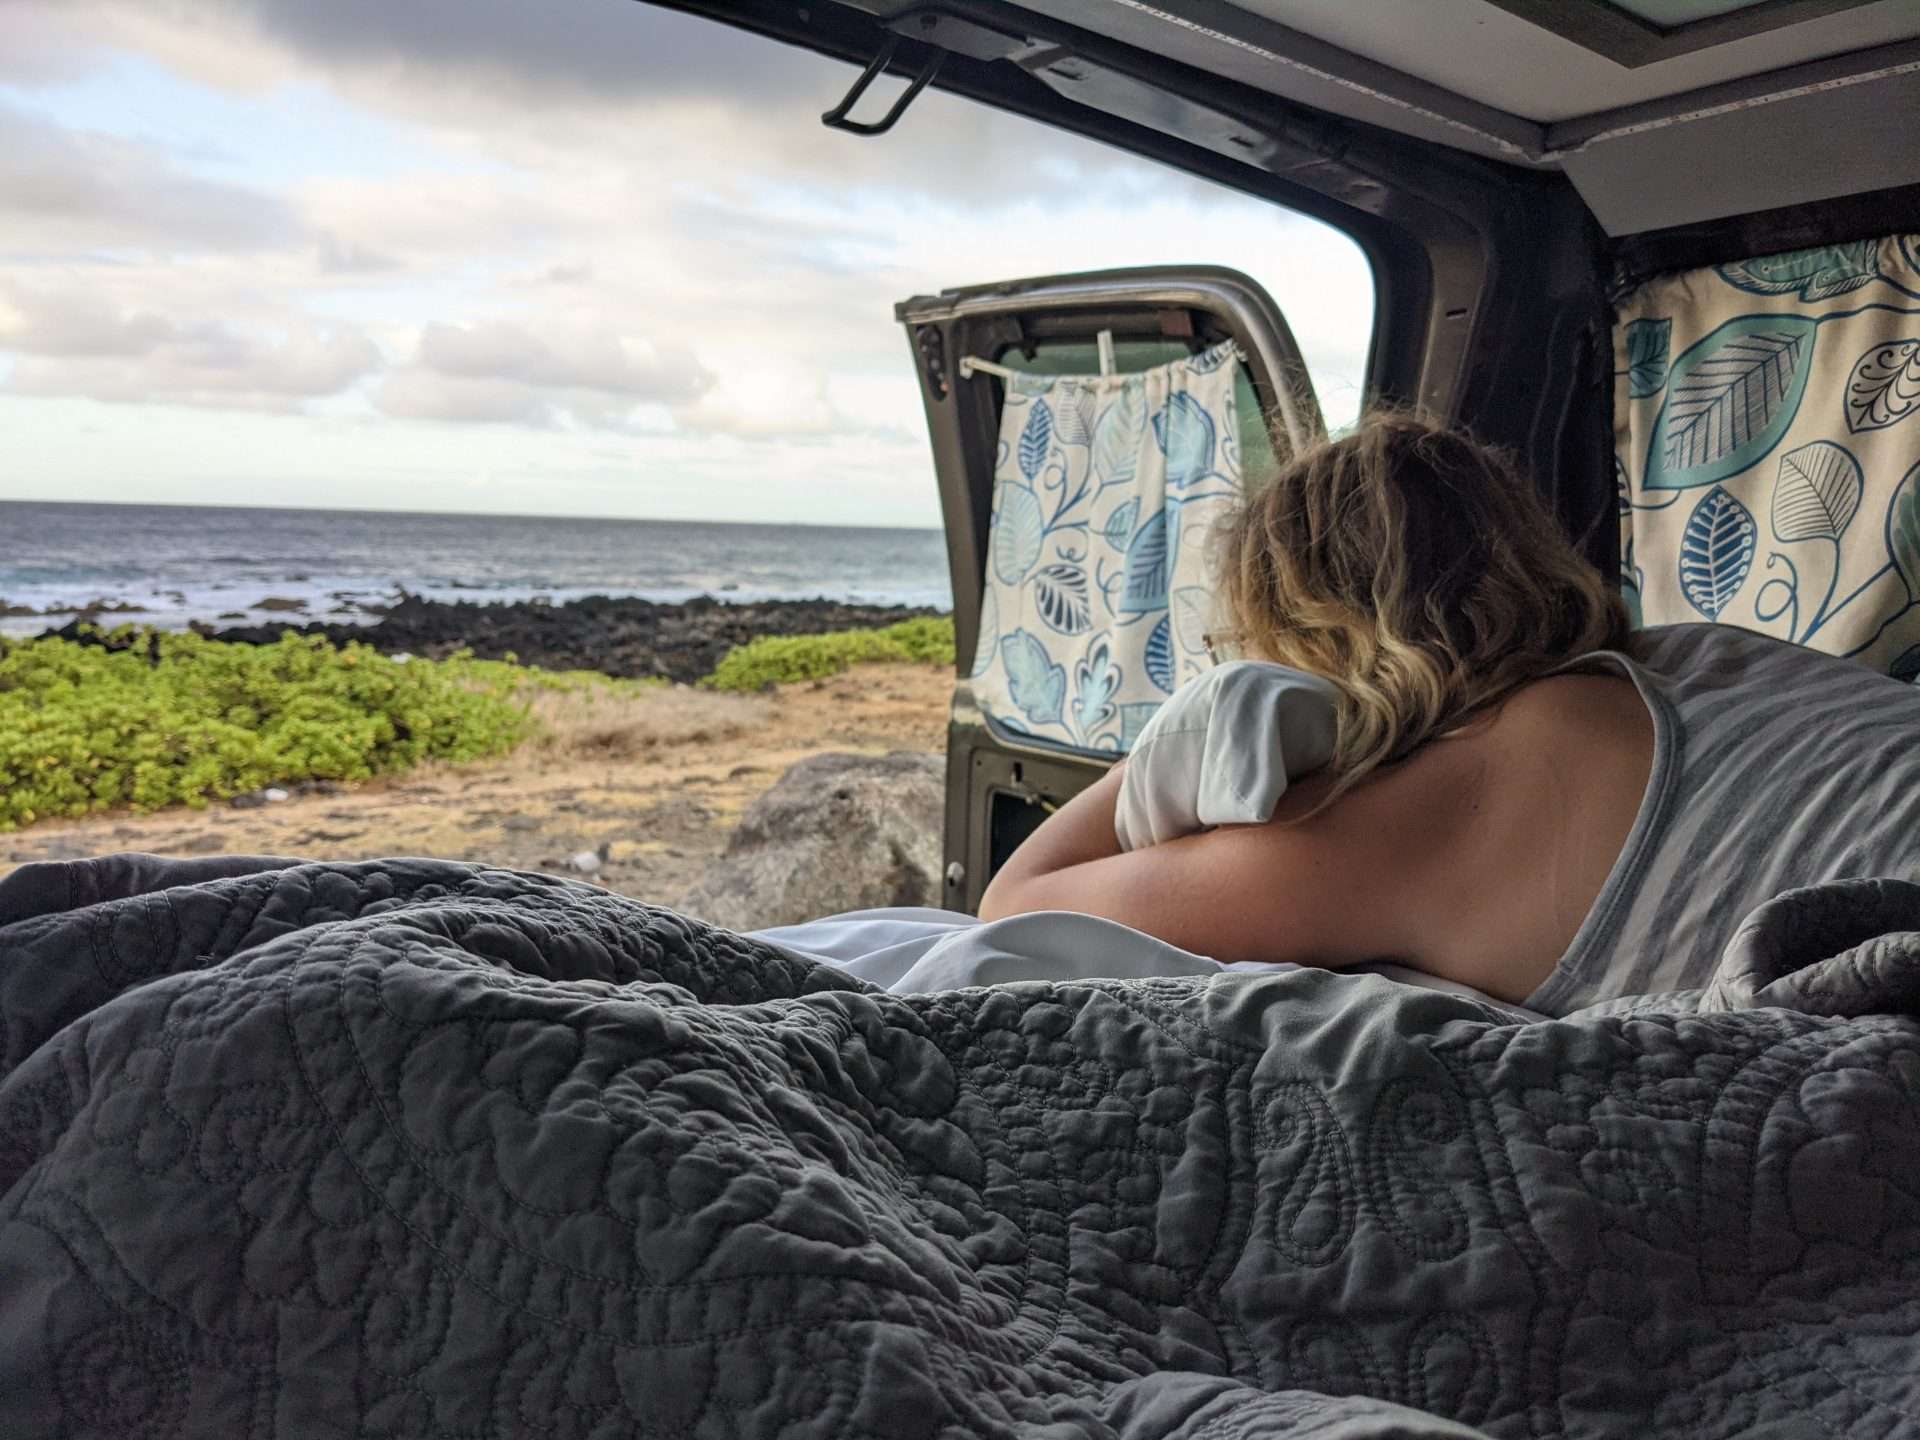 Cait enjoying van life in Hawaii